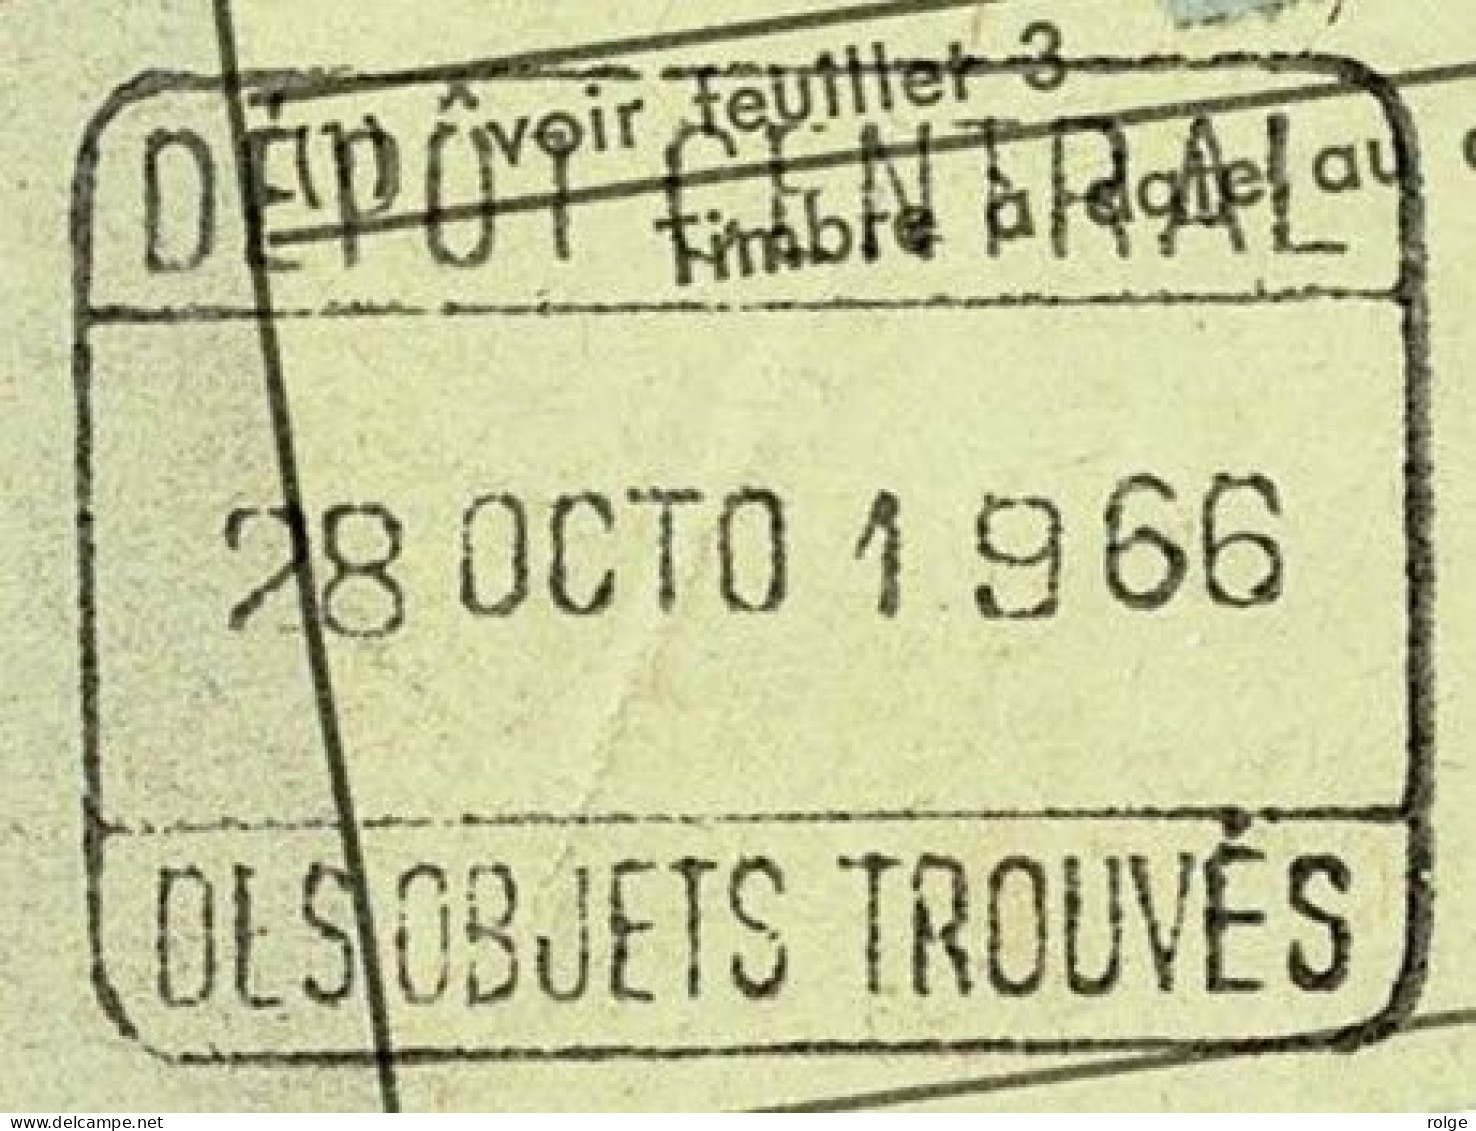 X1001   DEPOT CENTRAL / DES OBJECTS TROUVES      26 JUIL 1966 - Documenten & Fragmenten